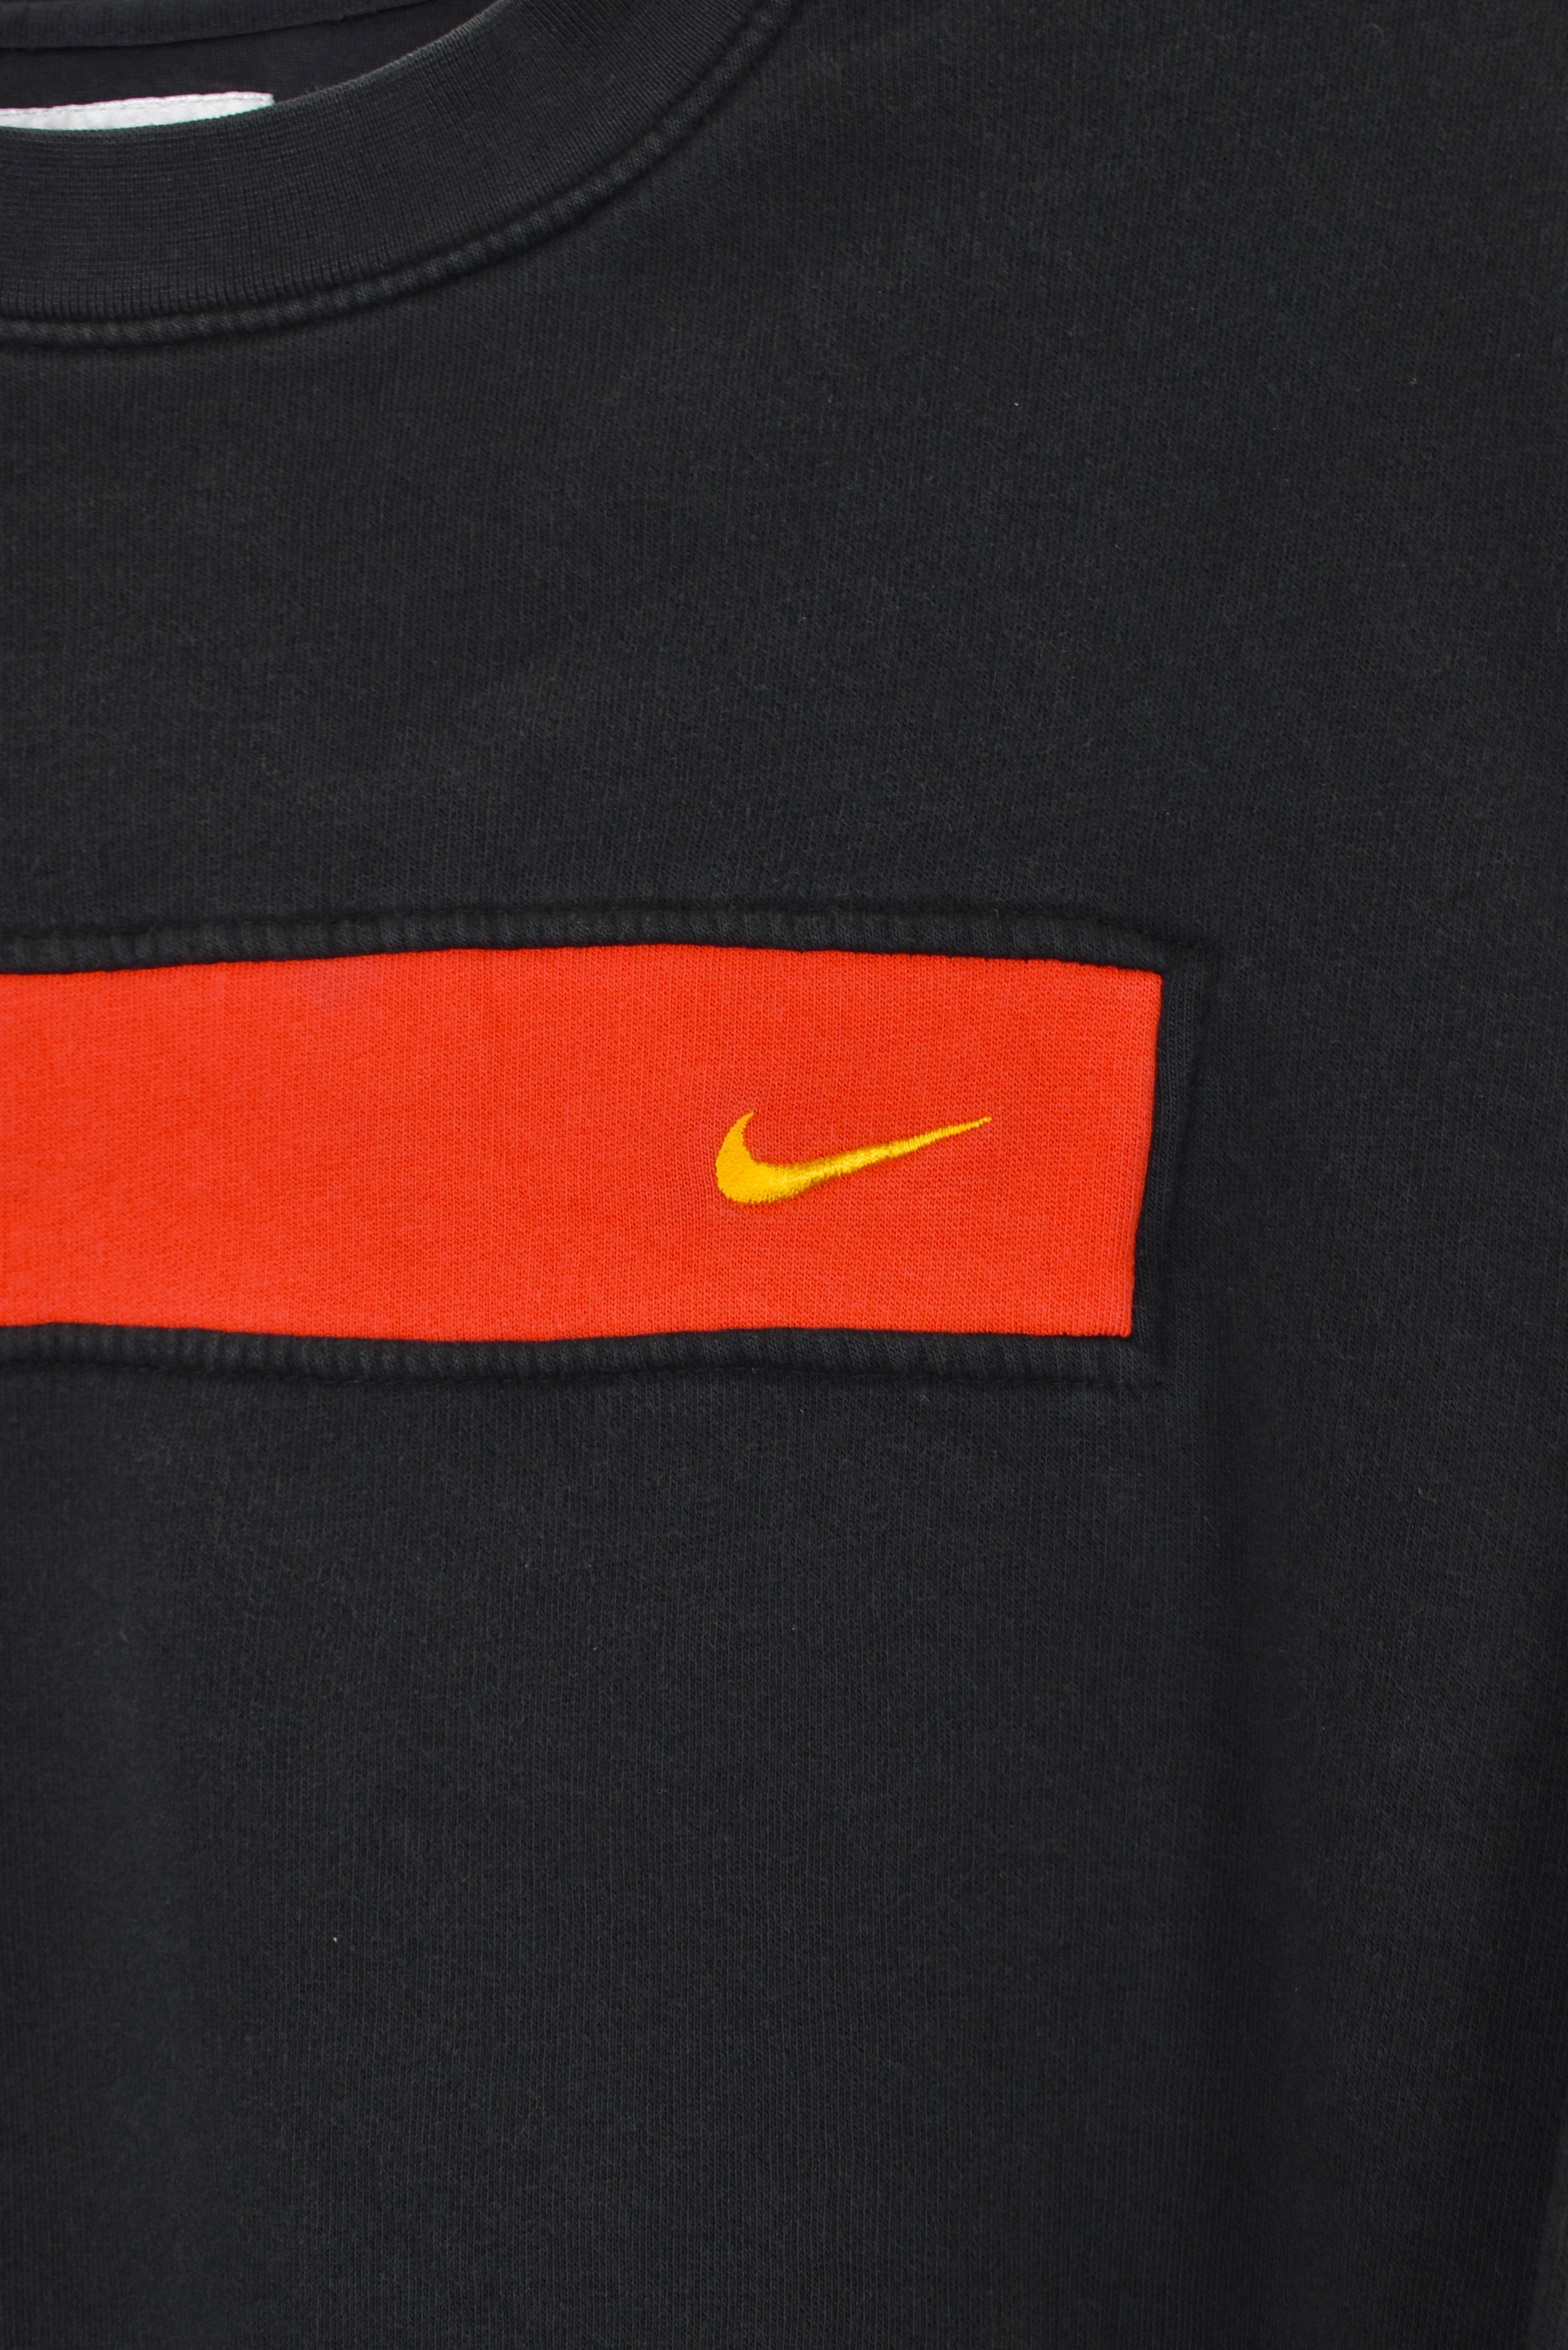 Vintage Nike sweatshirt, black embroidered crewneck - Large